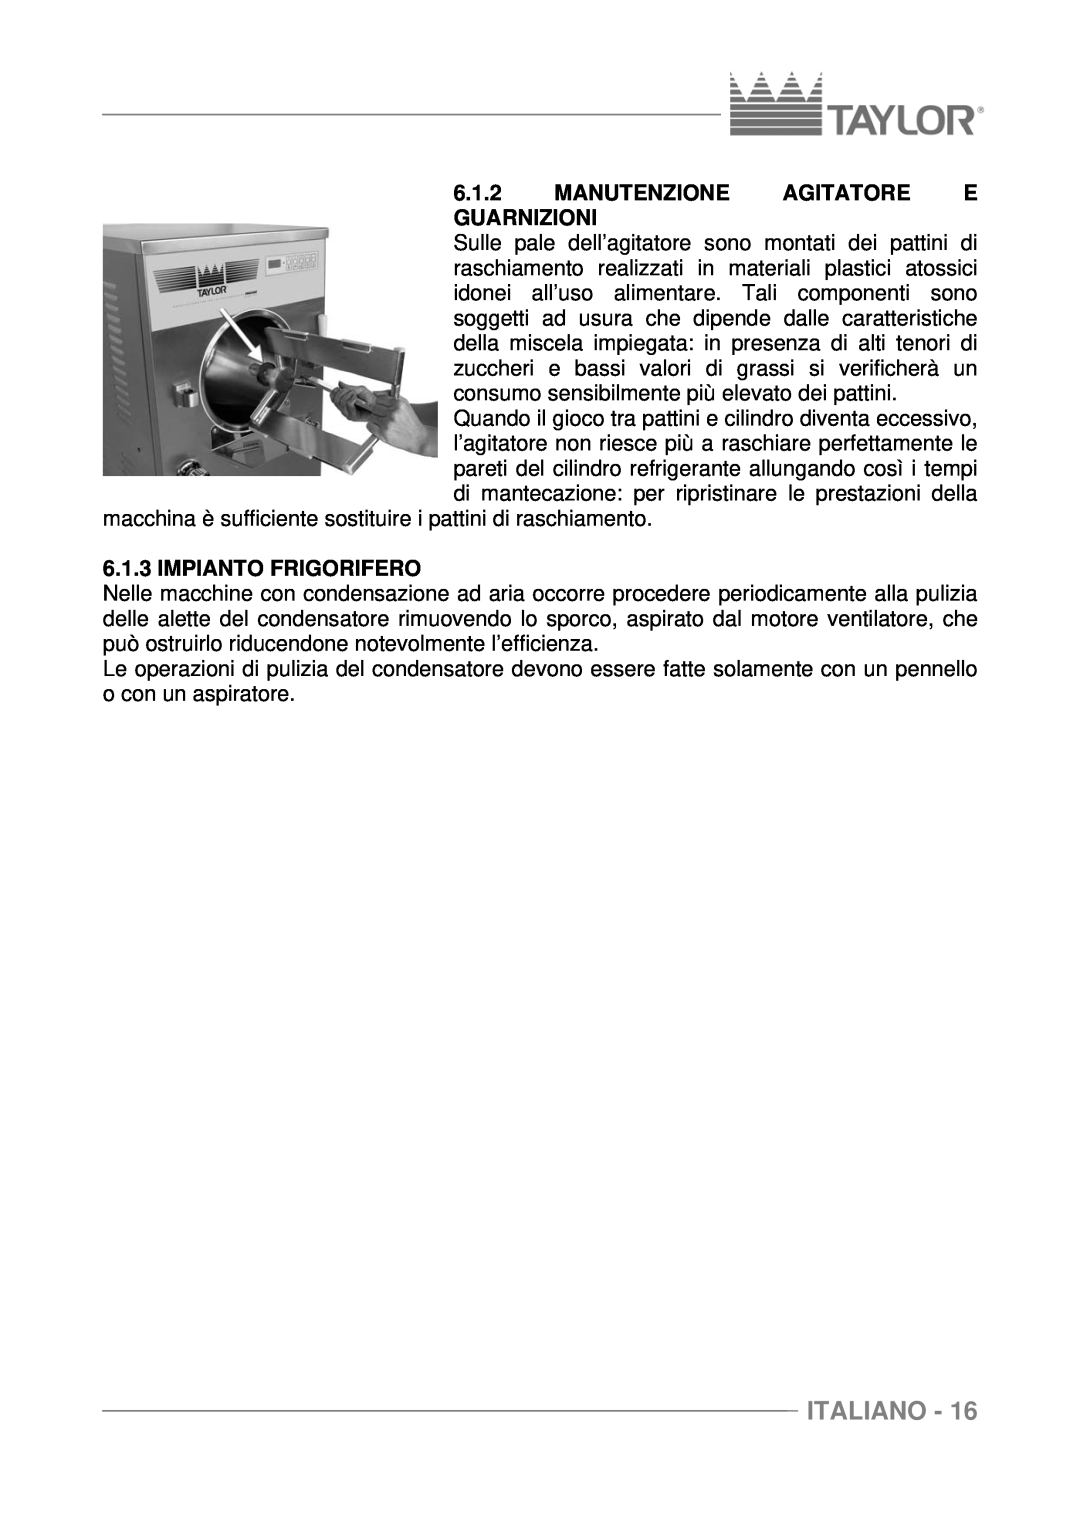 Taylor C116, C117, C118 manuel dutilisation Manutenzione Agitatore E Guarnizioni, Impianto Frigorifero, Italiano 